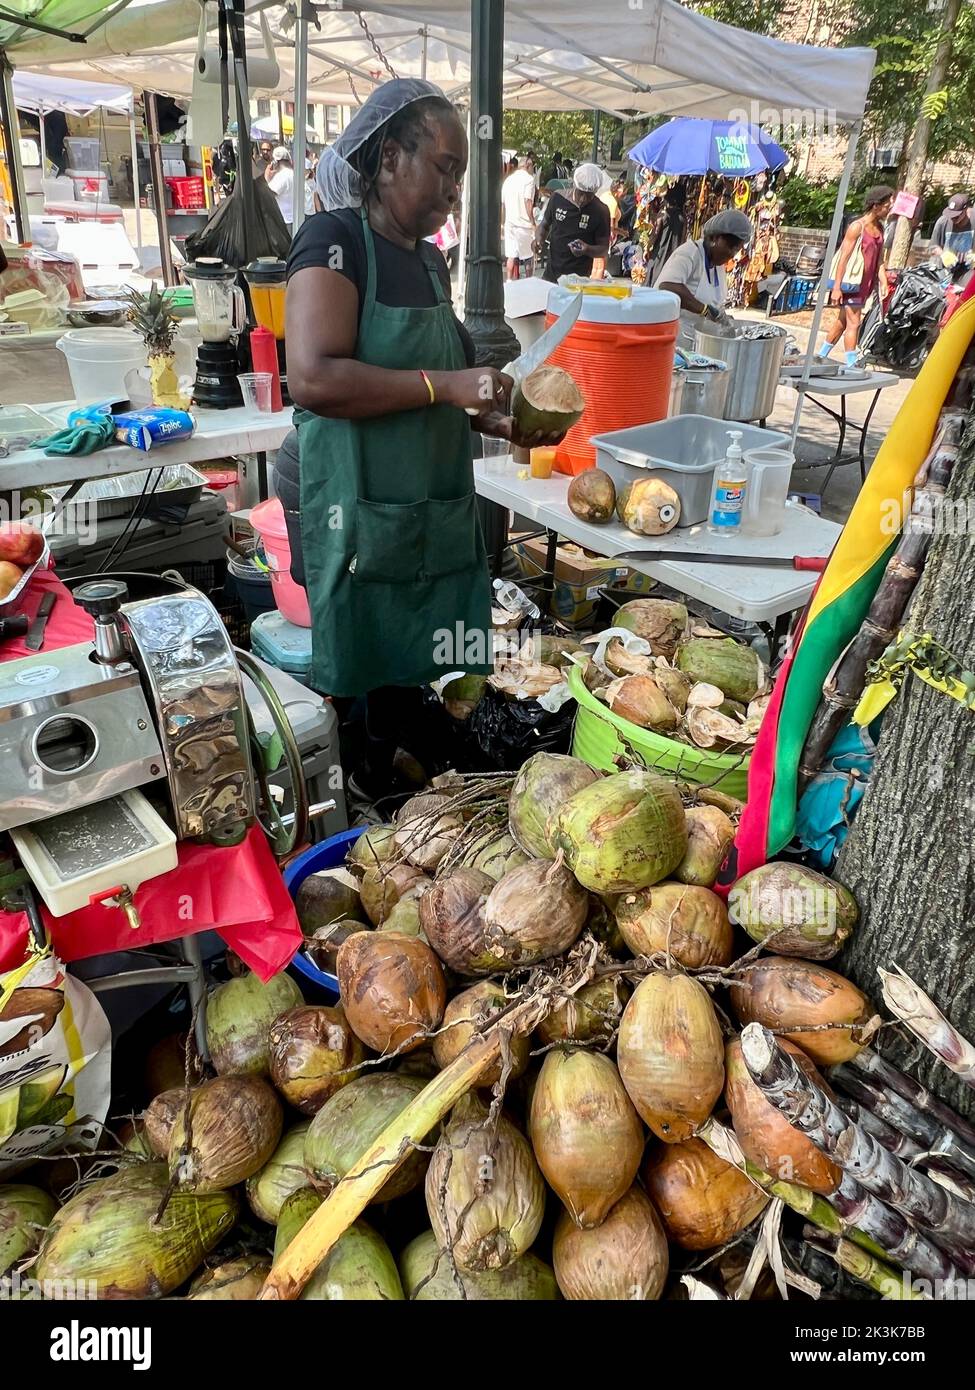 Woman prépare du jus de noix de coco frais dans la noix de coco au West Indian Day Parade le long de Eastern Parkway à Brooklyn, New York. Banque D'Images